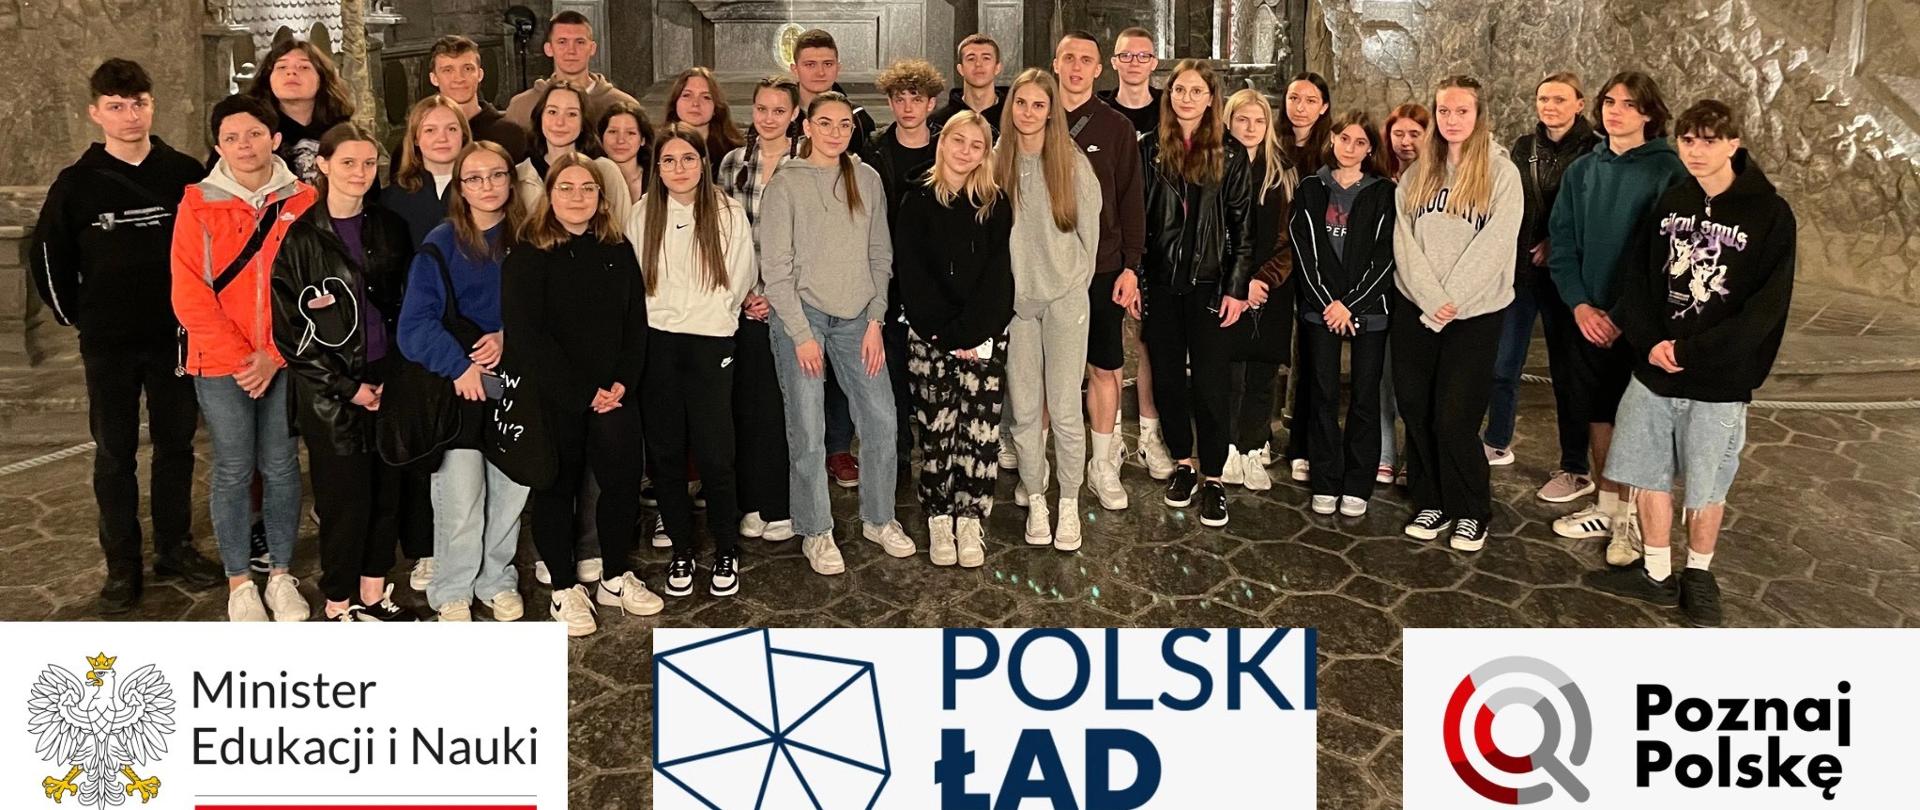 Młodzież i nauczyciele I LO na wycieczce w ramach przedsięwzięcia "Poznaj Polskę"